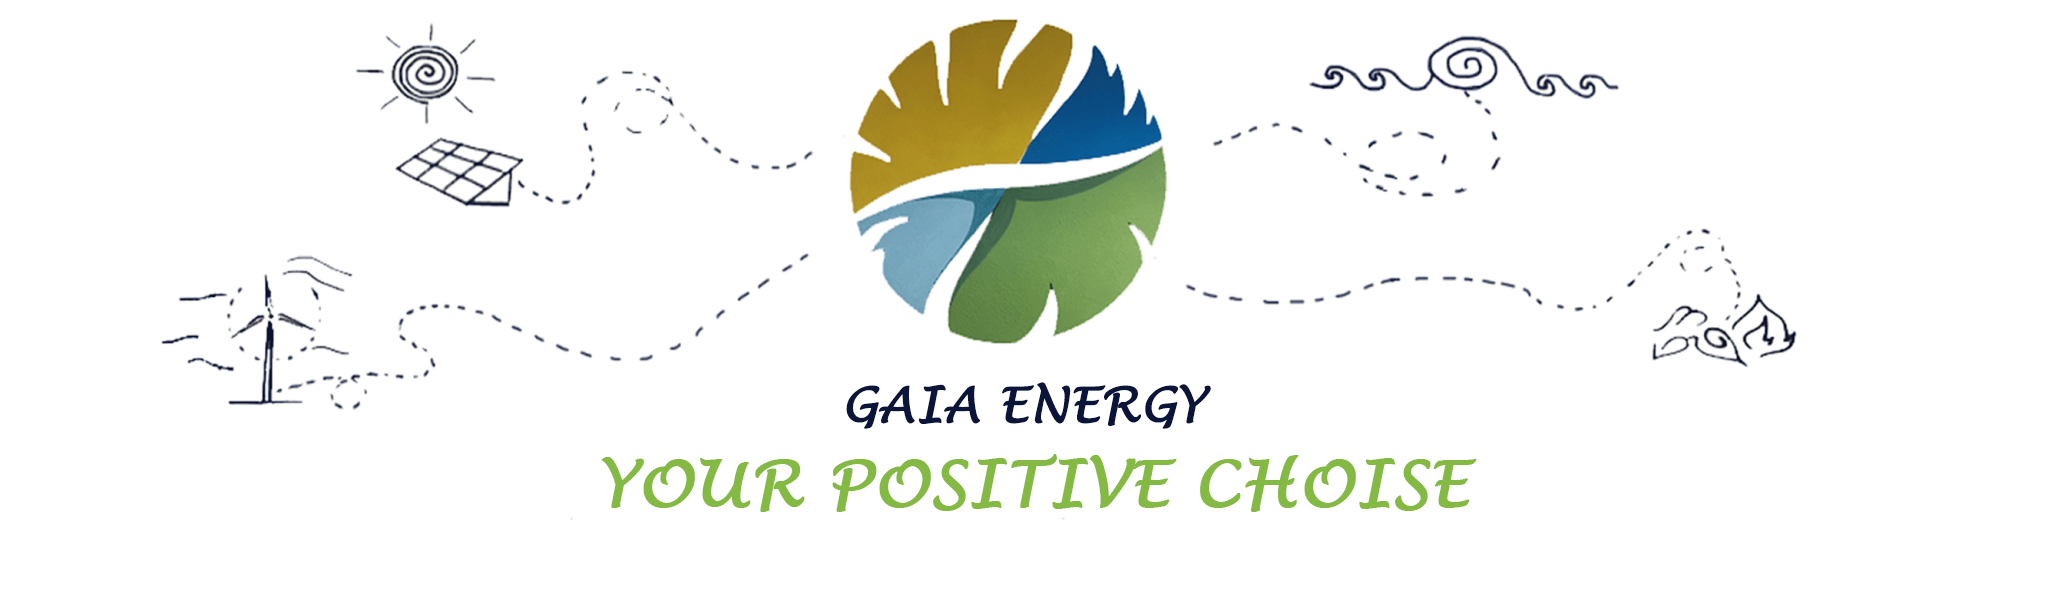 gaia energy